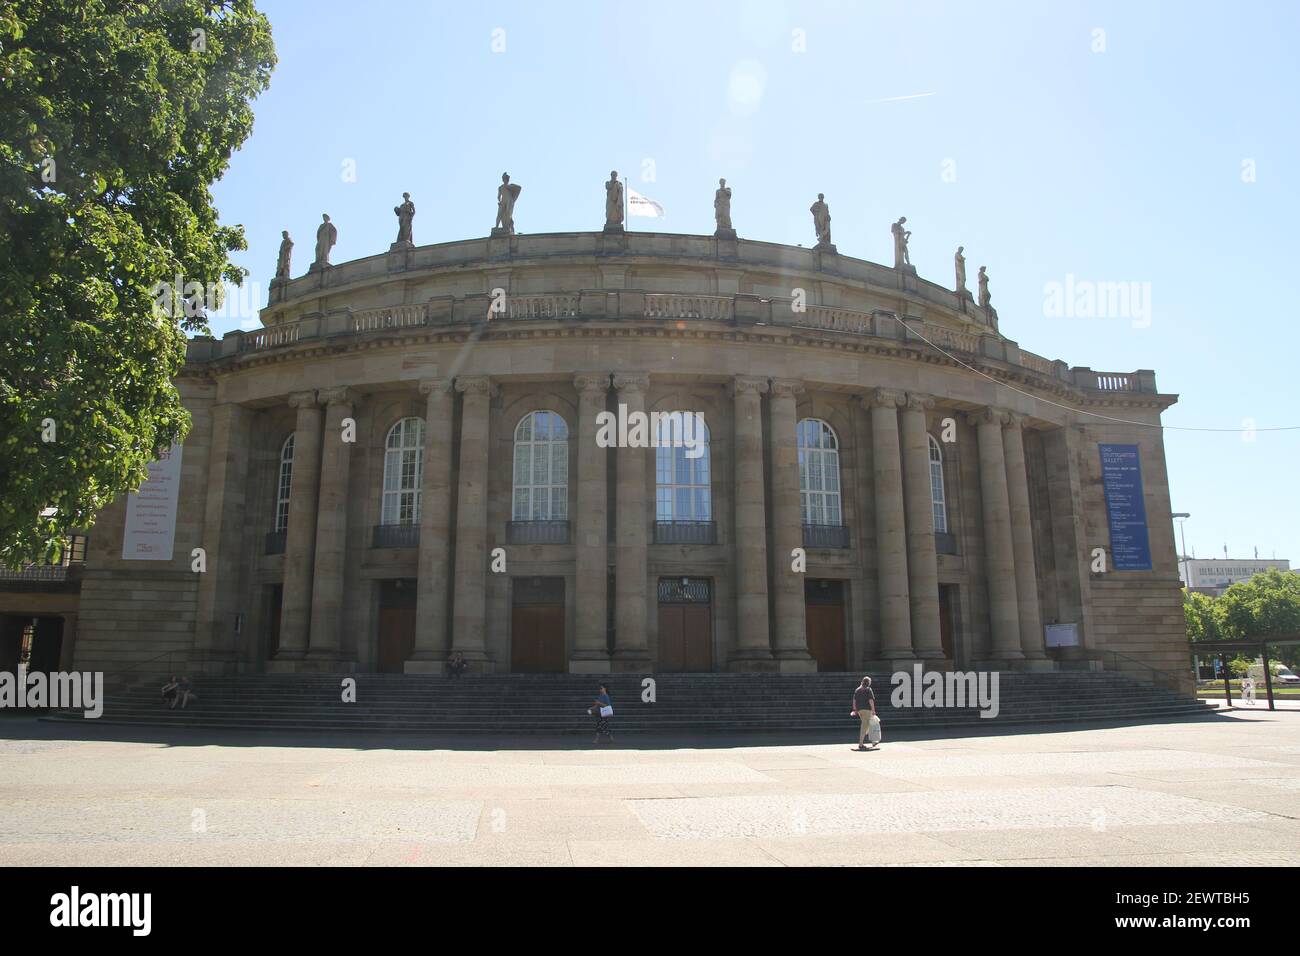 Allemagne merveilleuse conception de livre Calendrier conception de fond avec mystique romantique Stuttgarter Oper Schlossplatz Hauptbahnhof Opéra Château du château de Schloss Banque D'Images